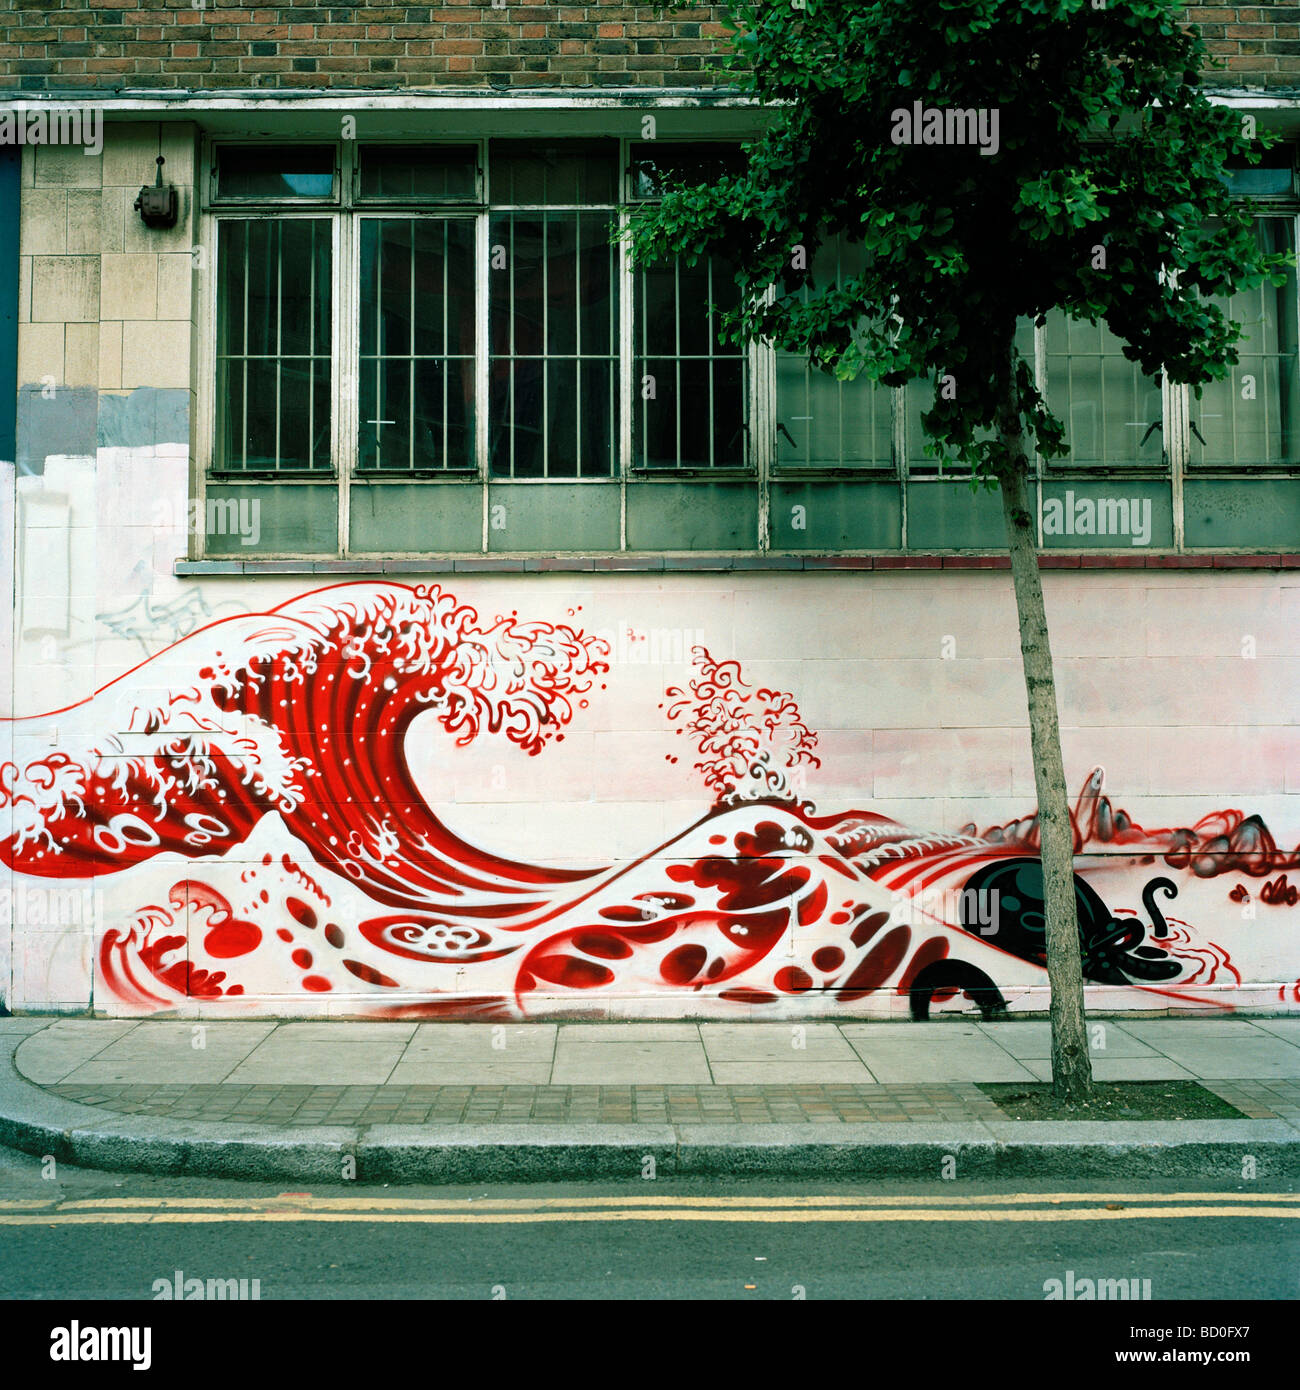 Street art dans le style de l'artiste japonais Hokusai. Shoreditch, London Banque D'Images